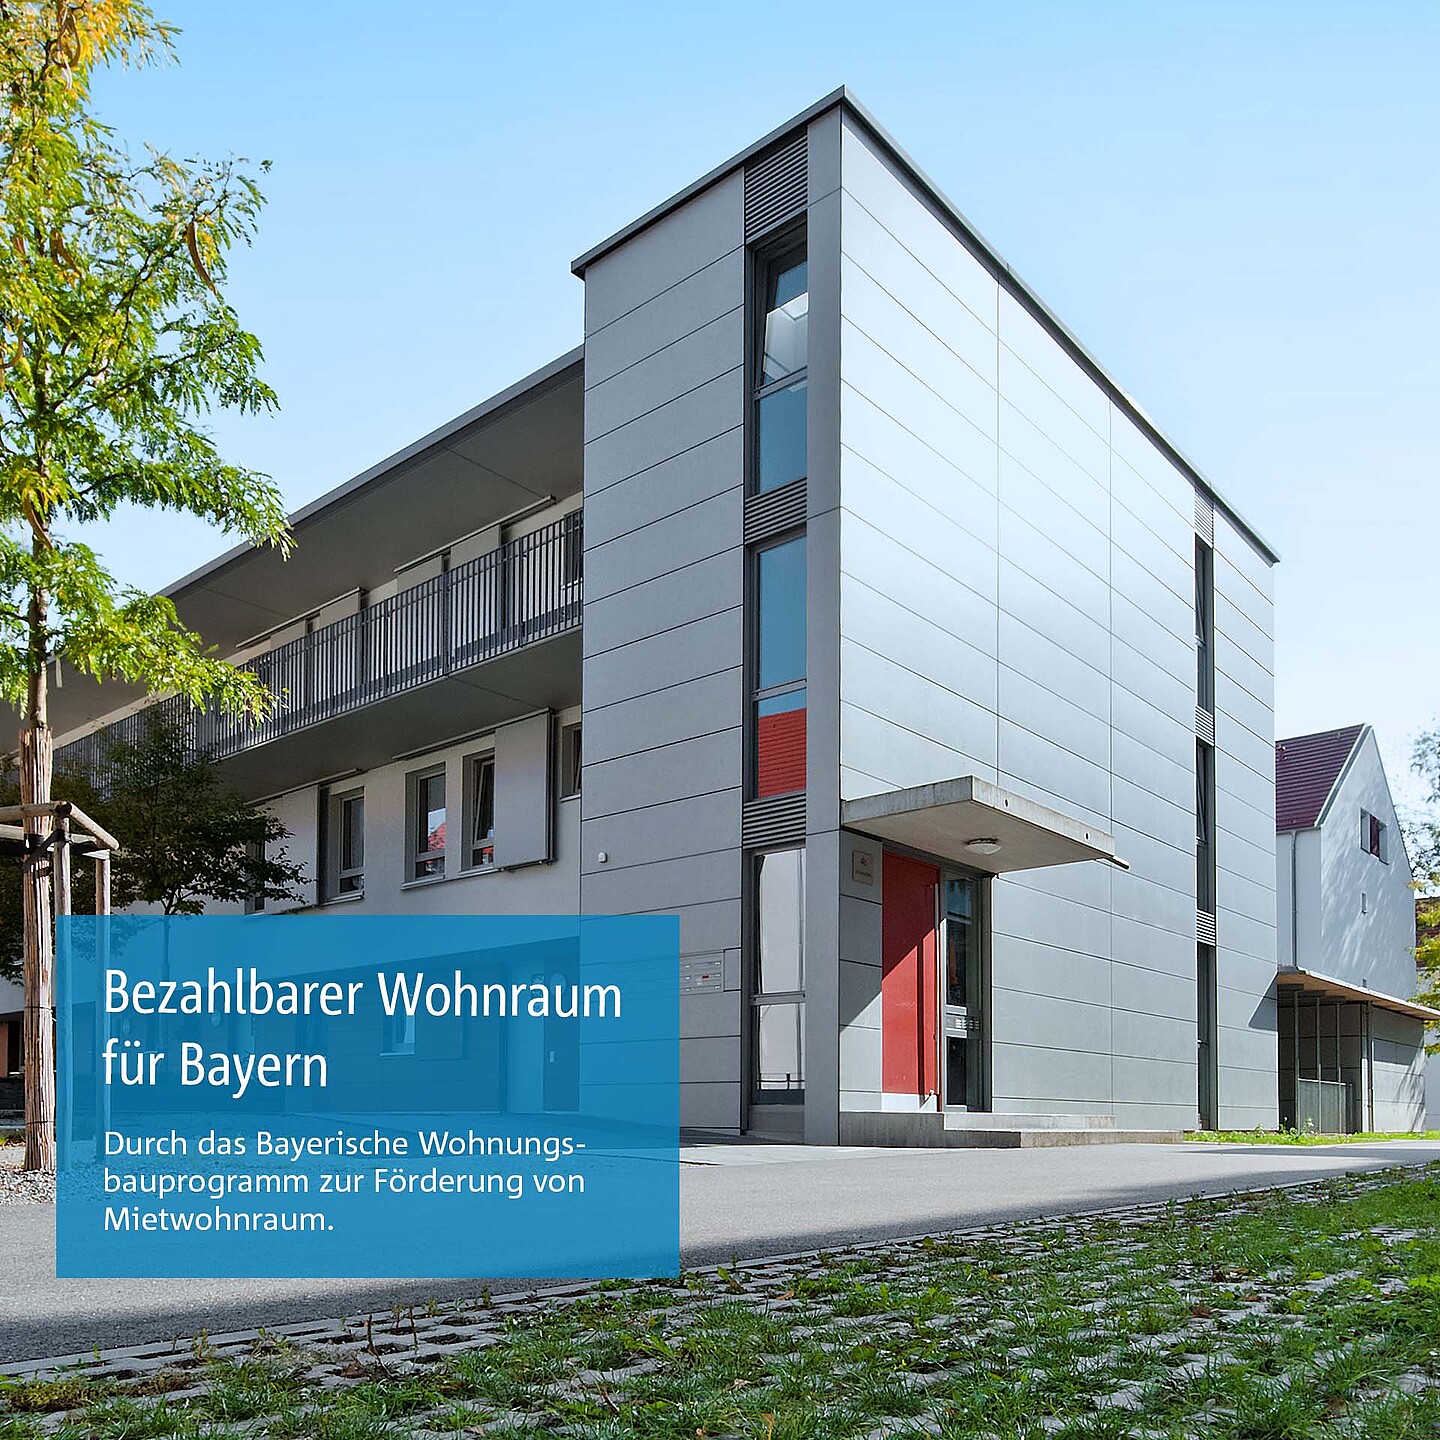 Mietwohngebäude: Staatliche Förderung von Mietwohnraum durch das Bayerische Wohnungsbauprogramm der BayernLabo